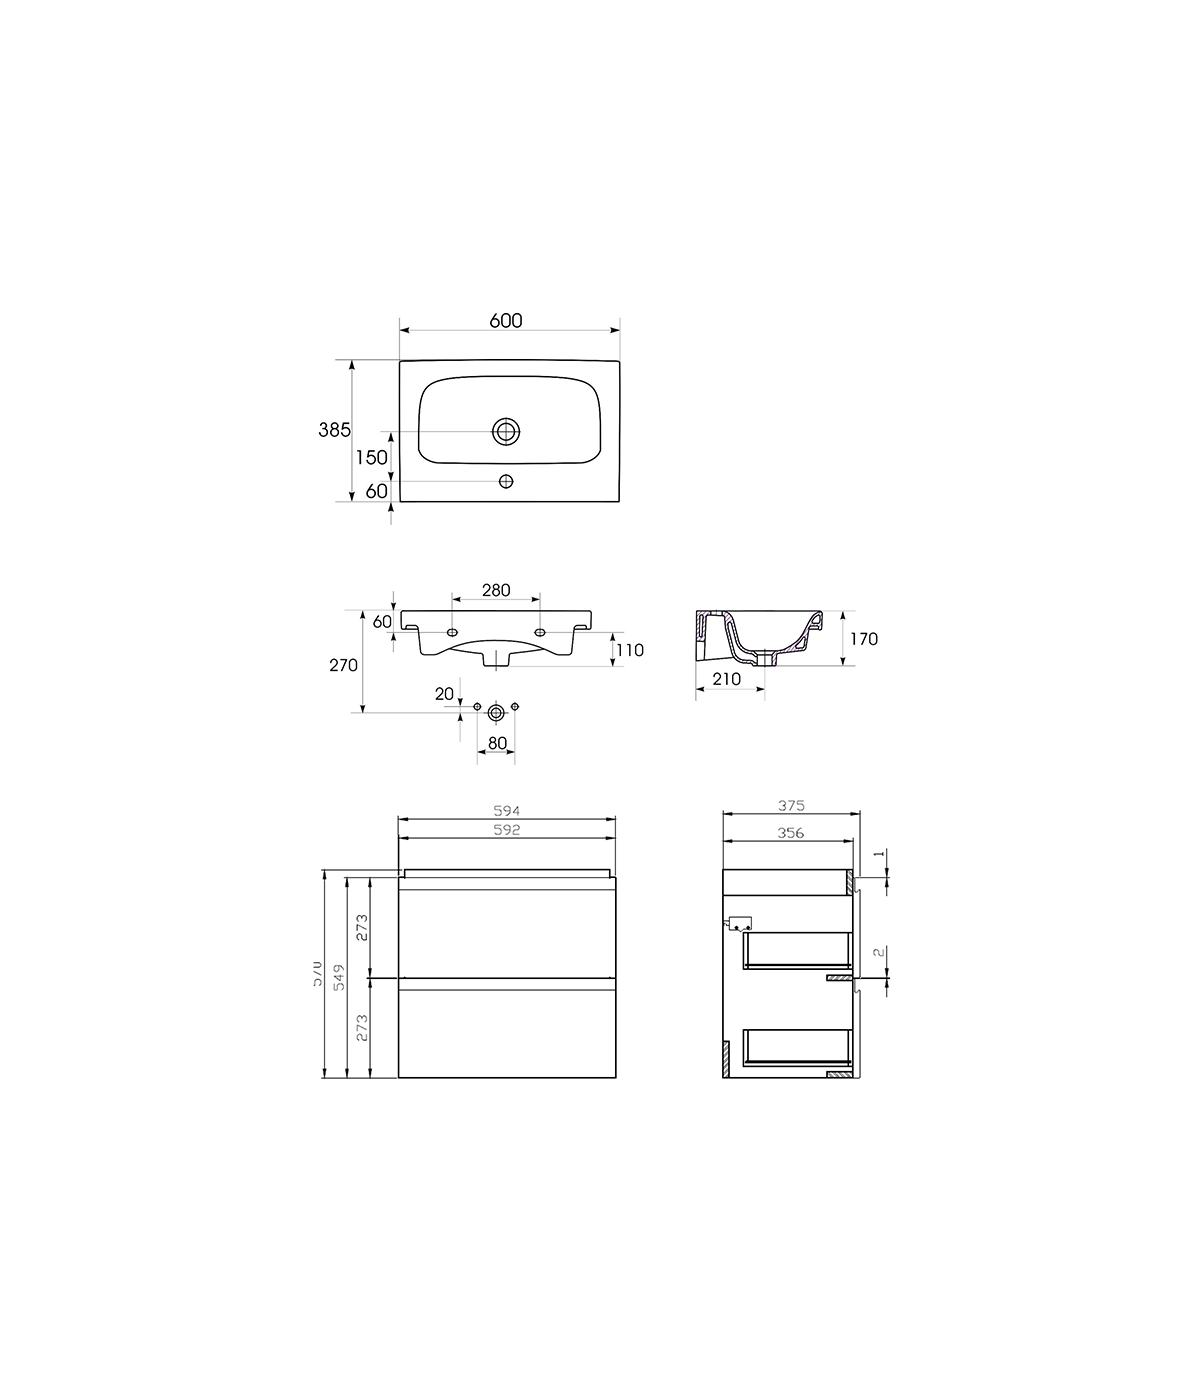 Badmöbel Set MODUO SLIM 60 Waschbecken-Unterschrank, Hochschrank 160 mit Spiegel Weiß